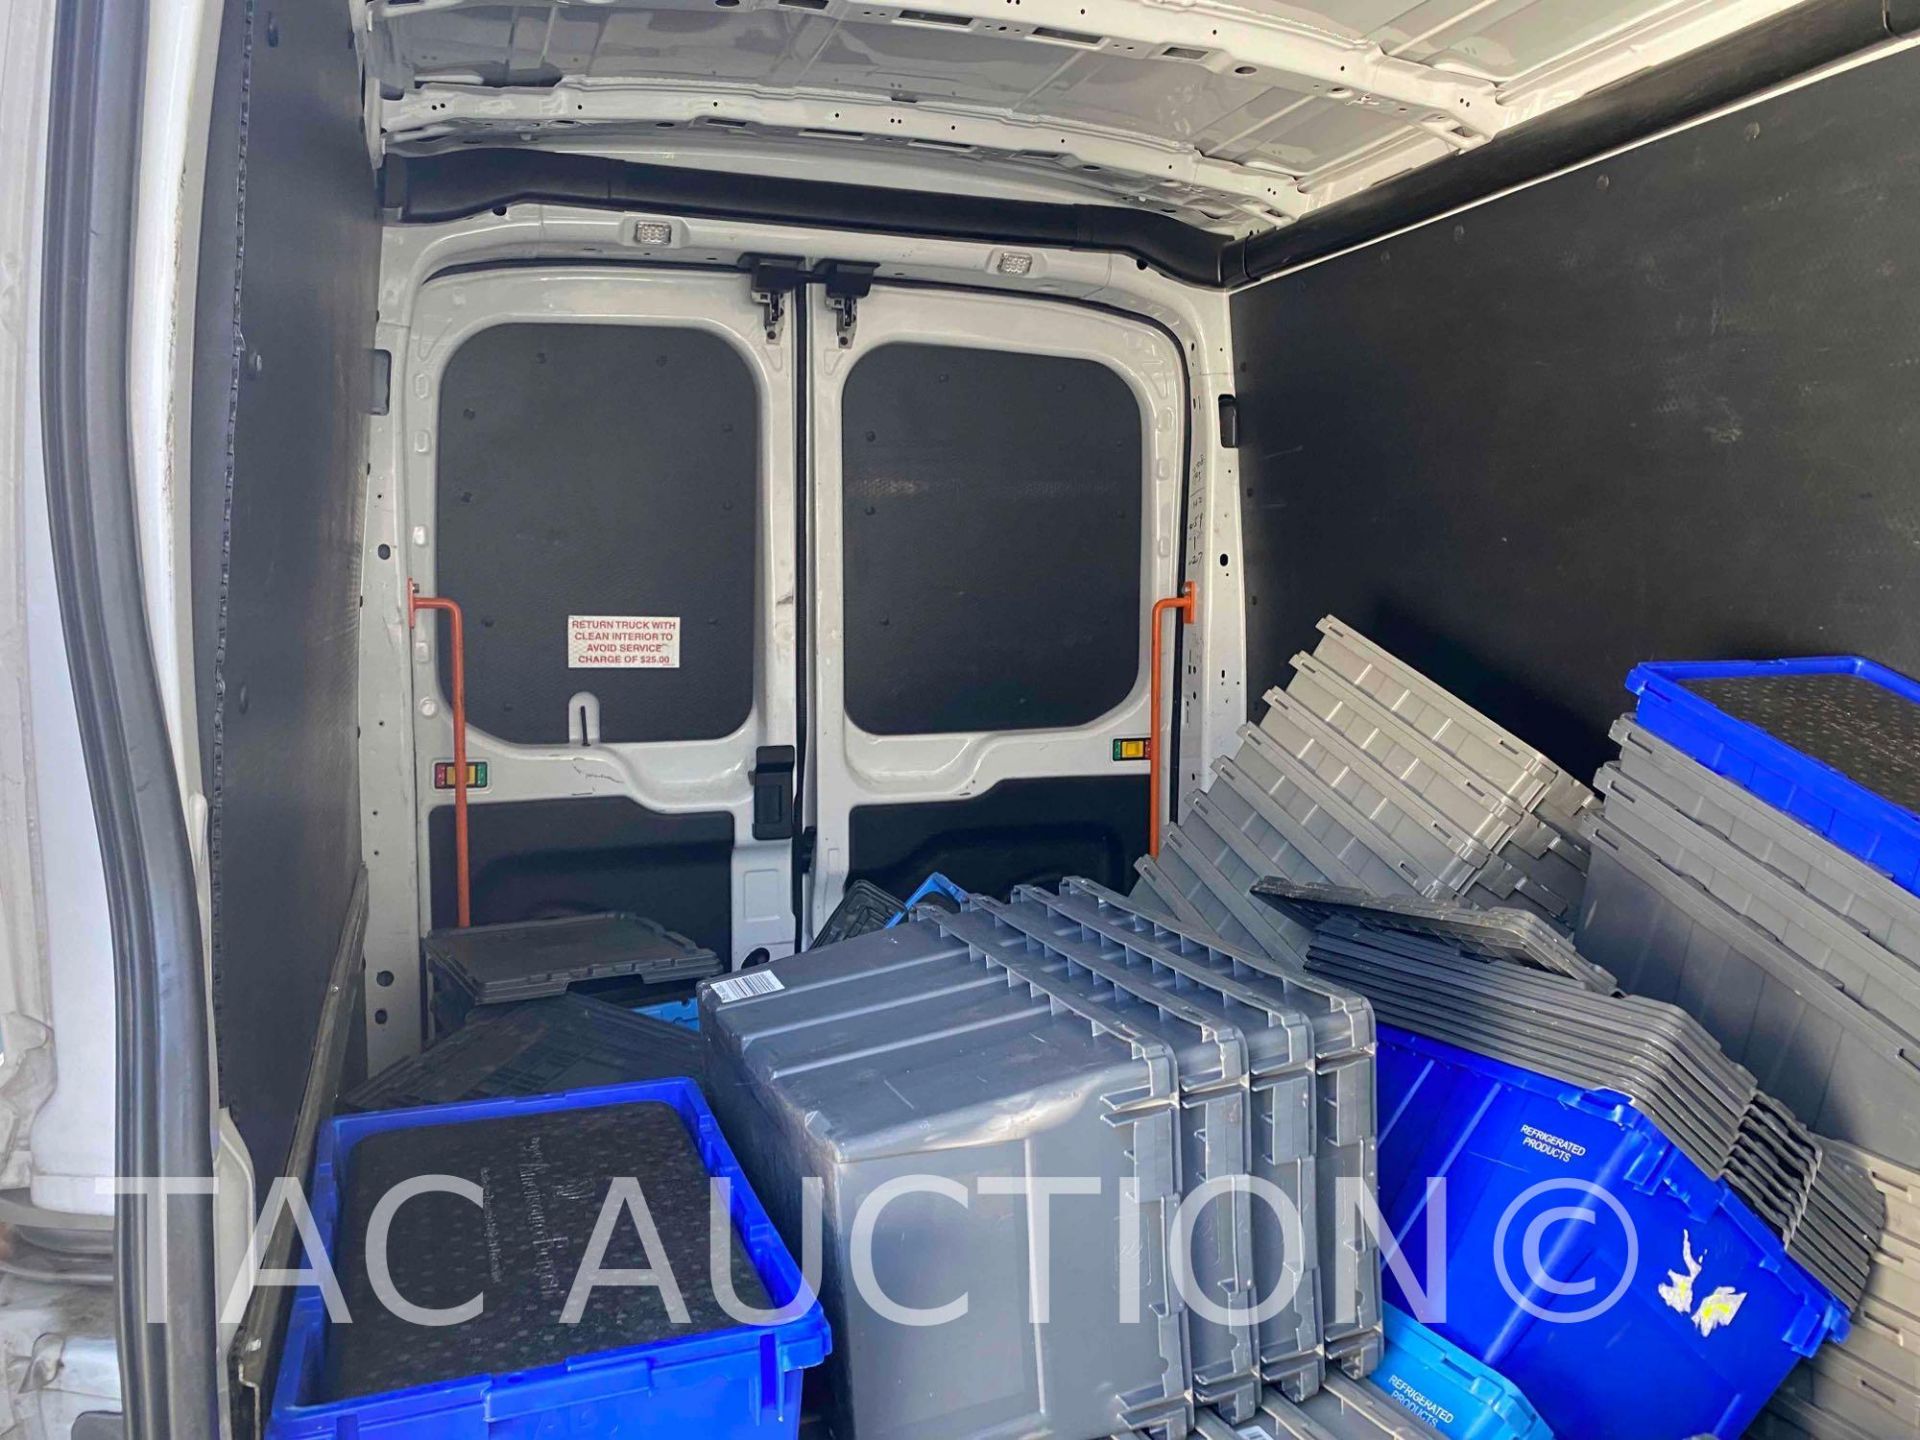 2019 Ford Transit 150 Cargo Van - Image 12 of 44